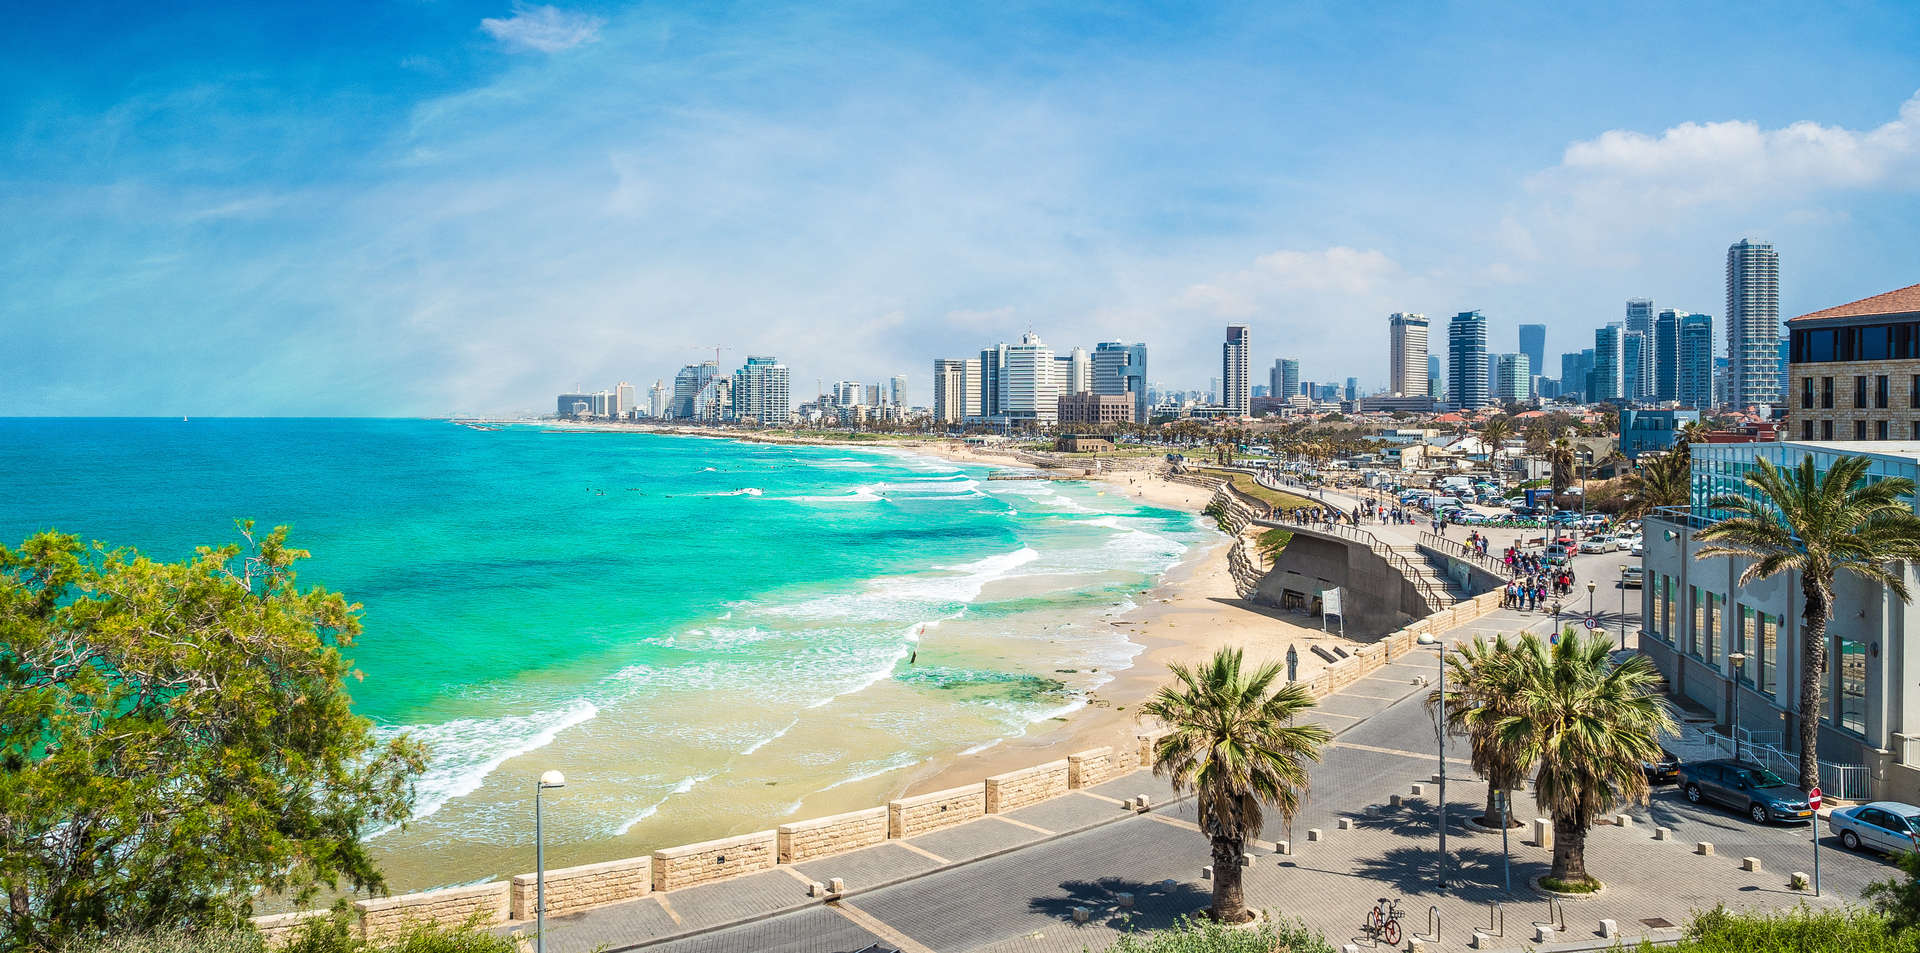 Достопримечательности Тель-Авива, пляжная полоса и извилистые улочки Яффо ранней весной при теплой погоде +20°C